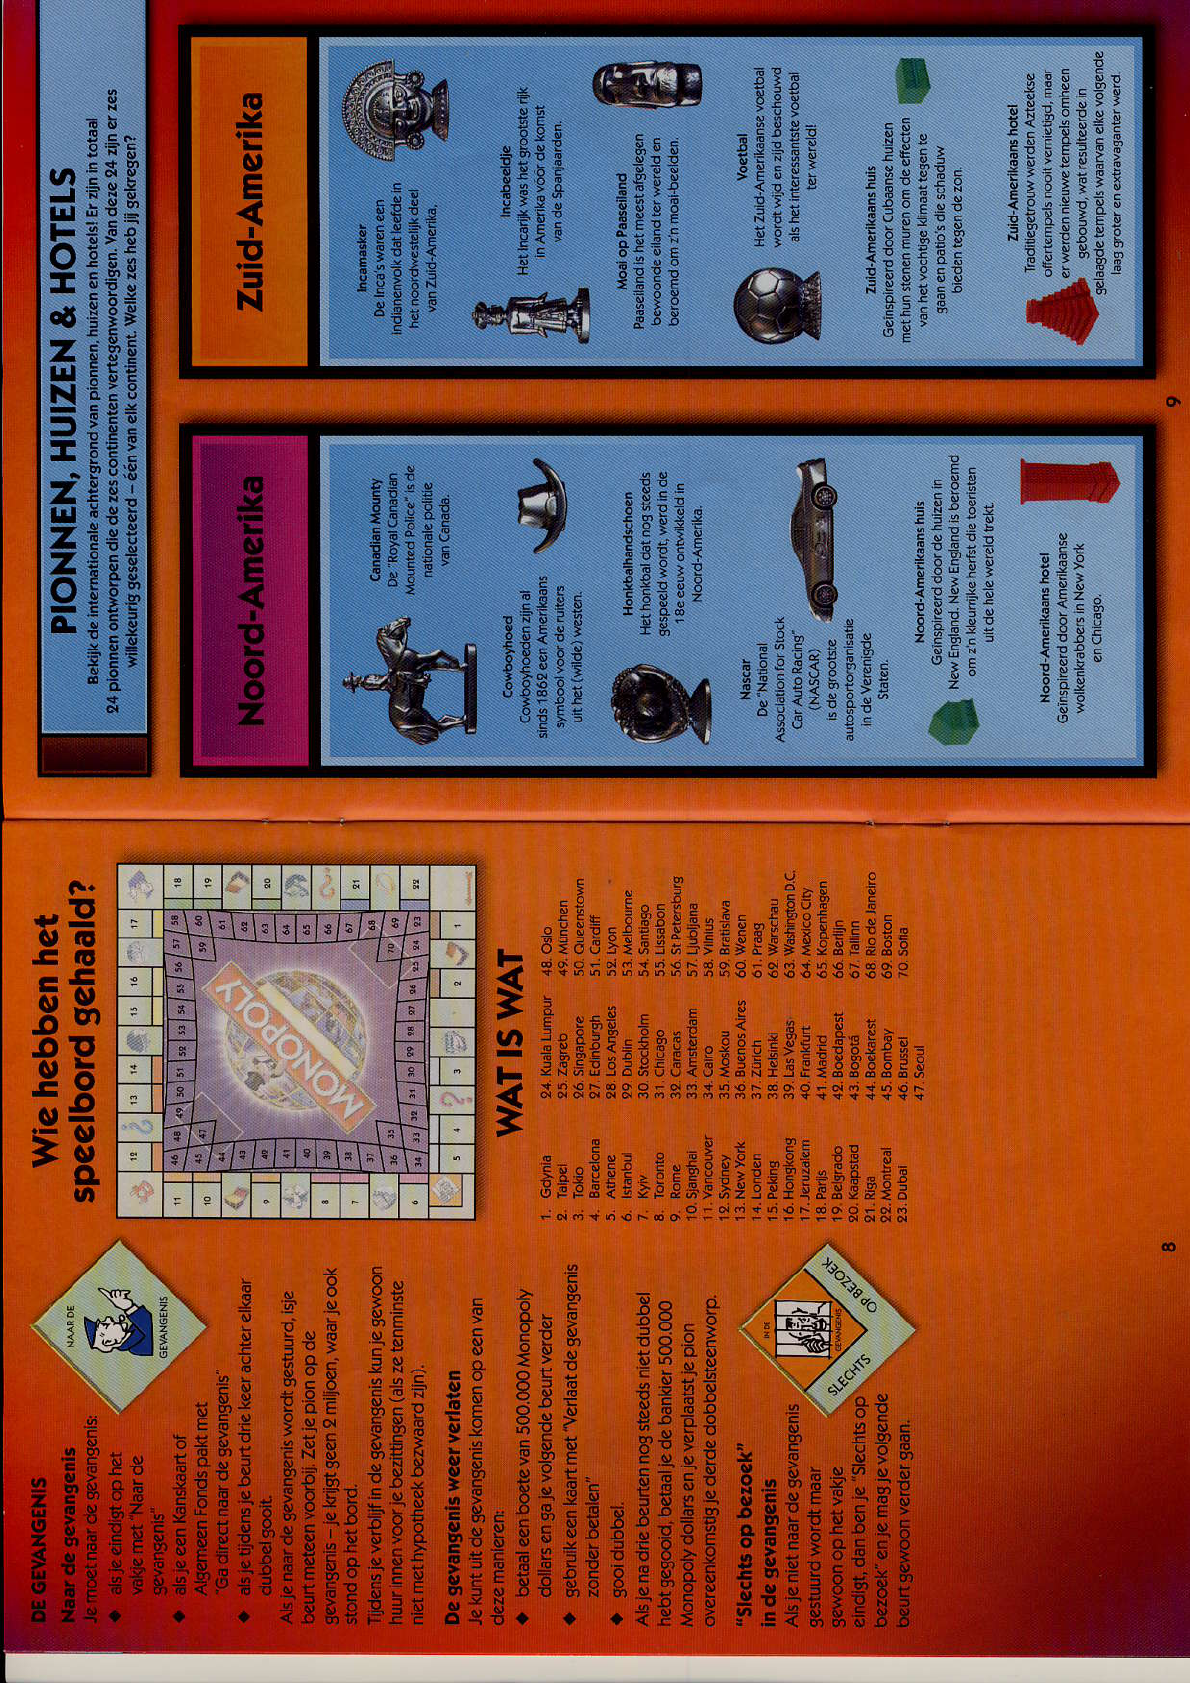 Justitie Niet genoeg Opmerkelijk Manual Hasbro Monopoly Wereldeditie (page 1 of 6) (Dutch)